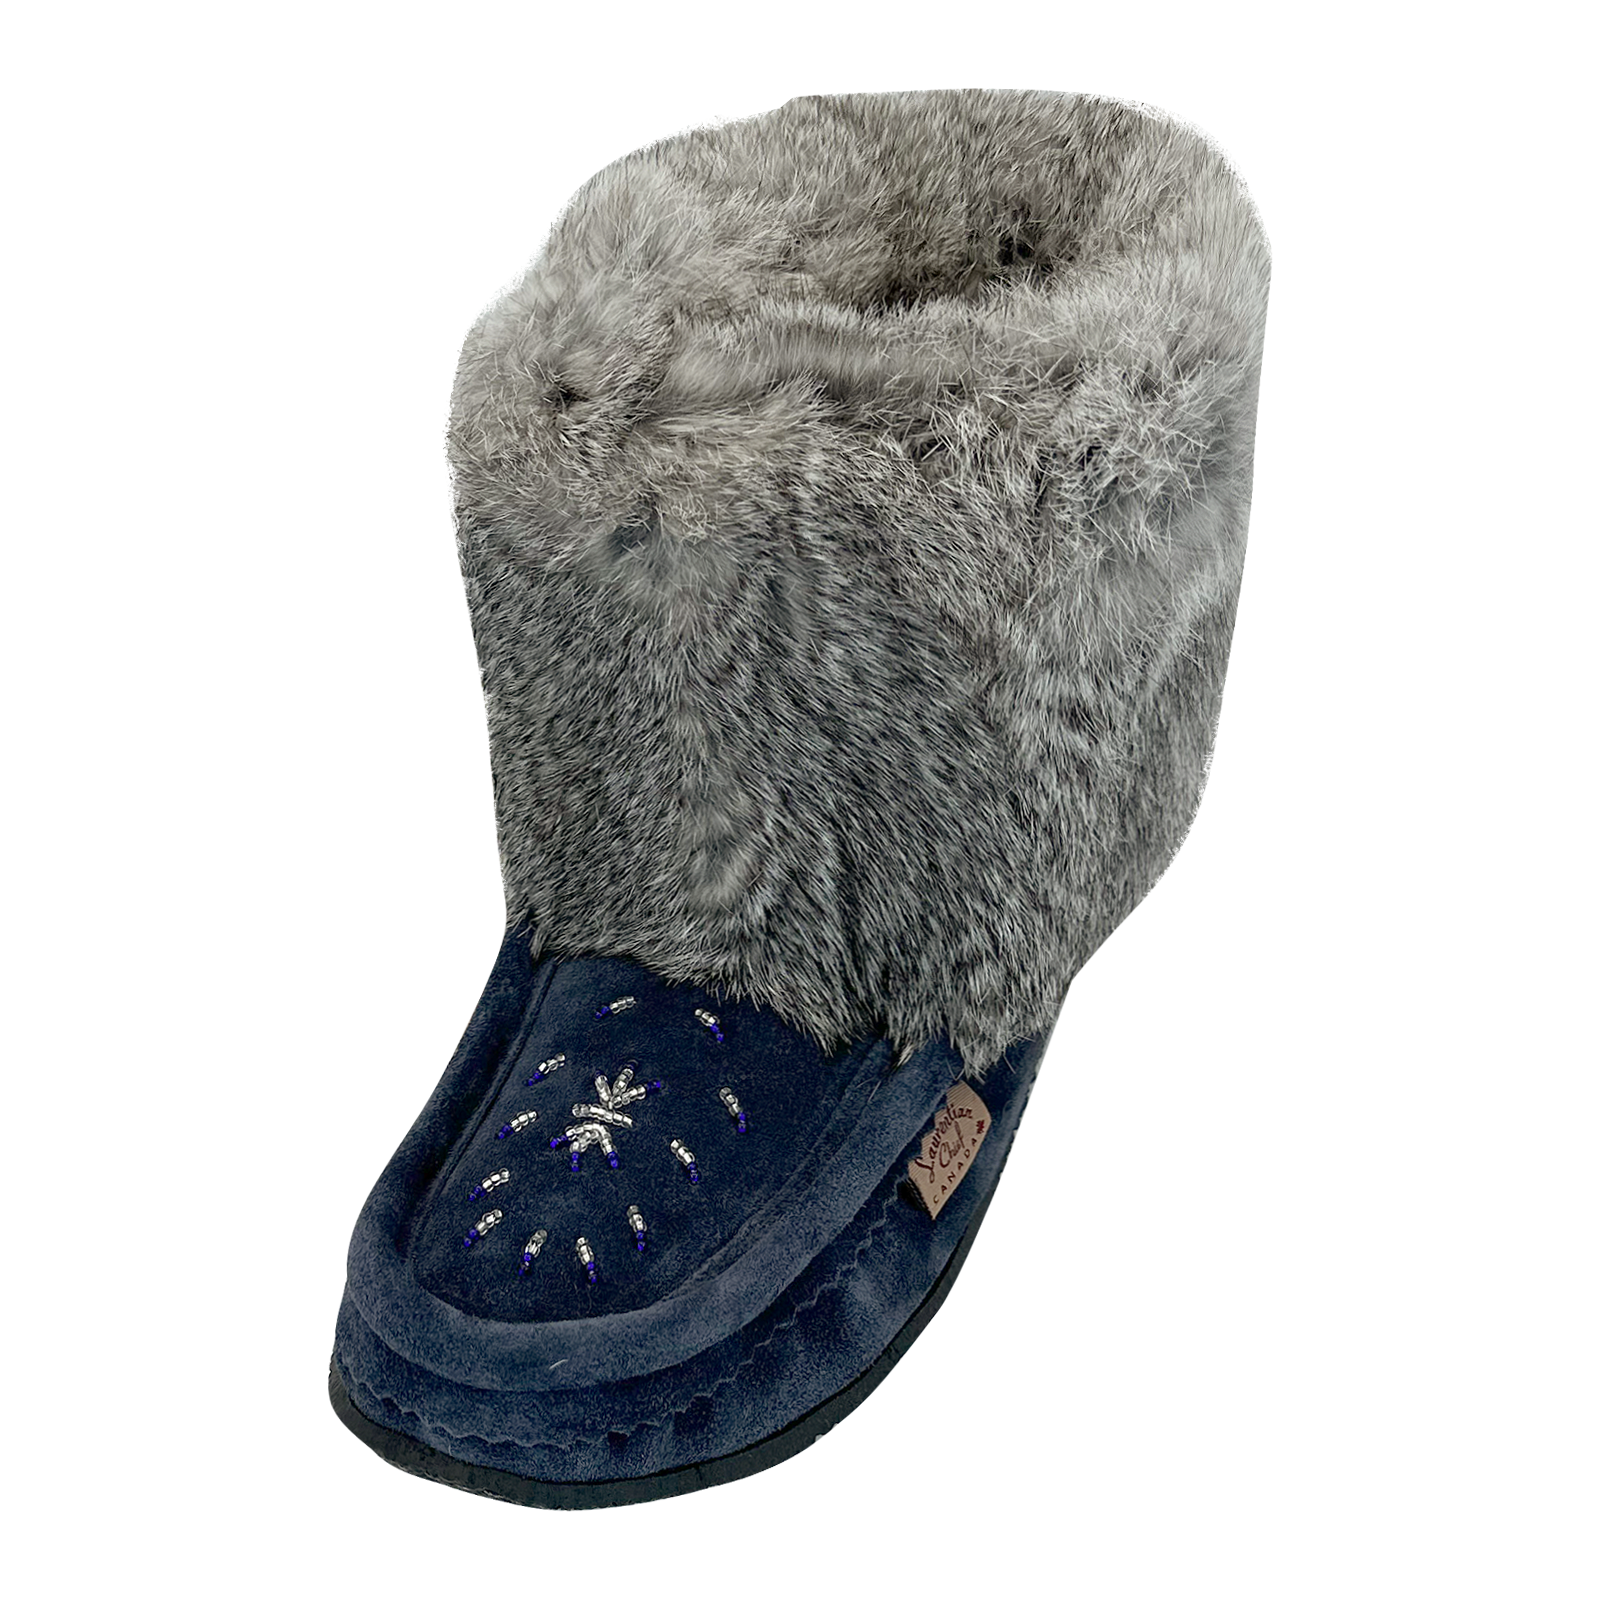 Women's Tsar 8" Black Rabbit Fur Moccasin Boots (Final Clearance)